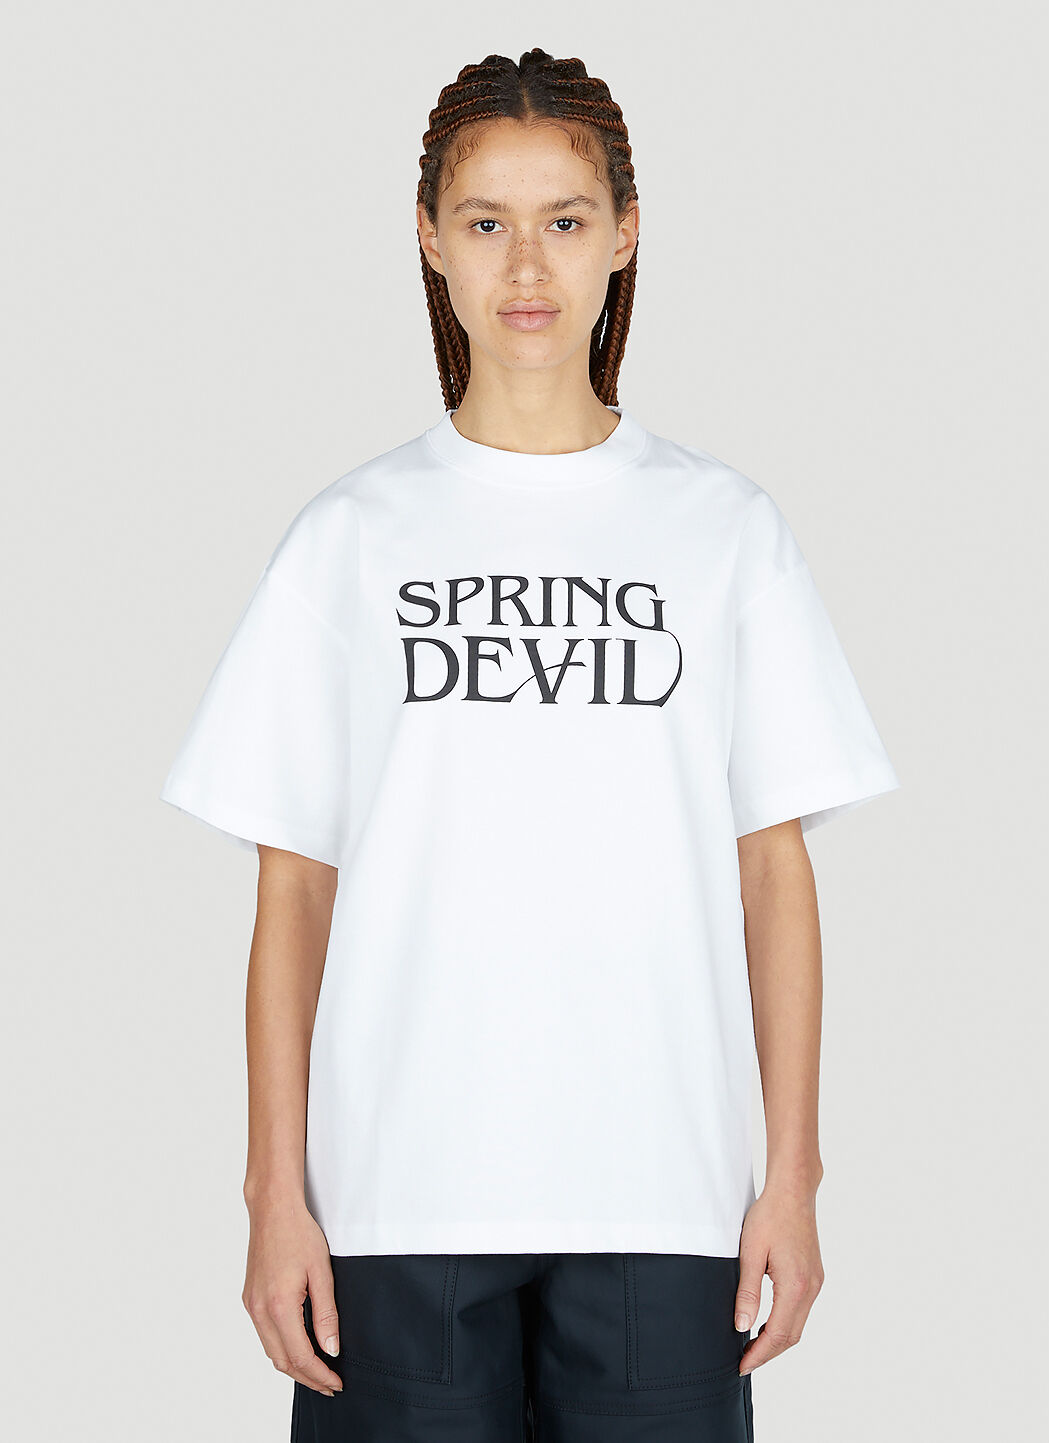 Soulland Spring Devil T 恤 米色 sld0352020